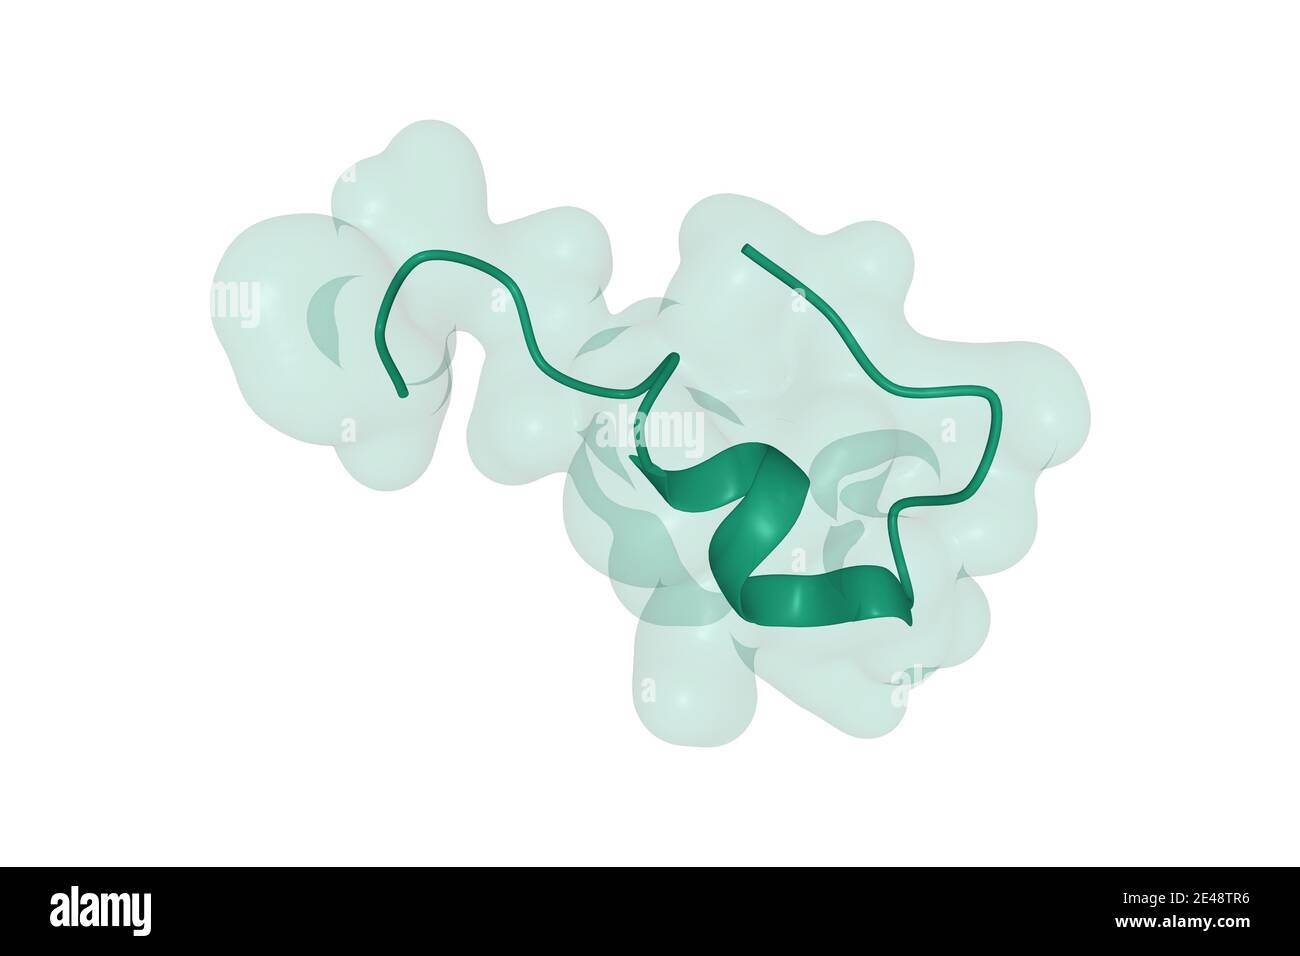 Structure de l'endothéline-1 humaine, un régulateur de l'hormone polypeptidique de la pression artérielle, modèle 3D de dessin animé de surface isolé, fond blanc Banque D'Images